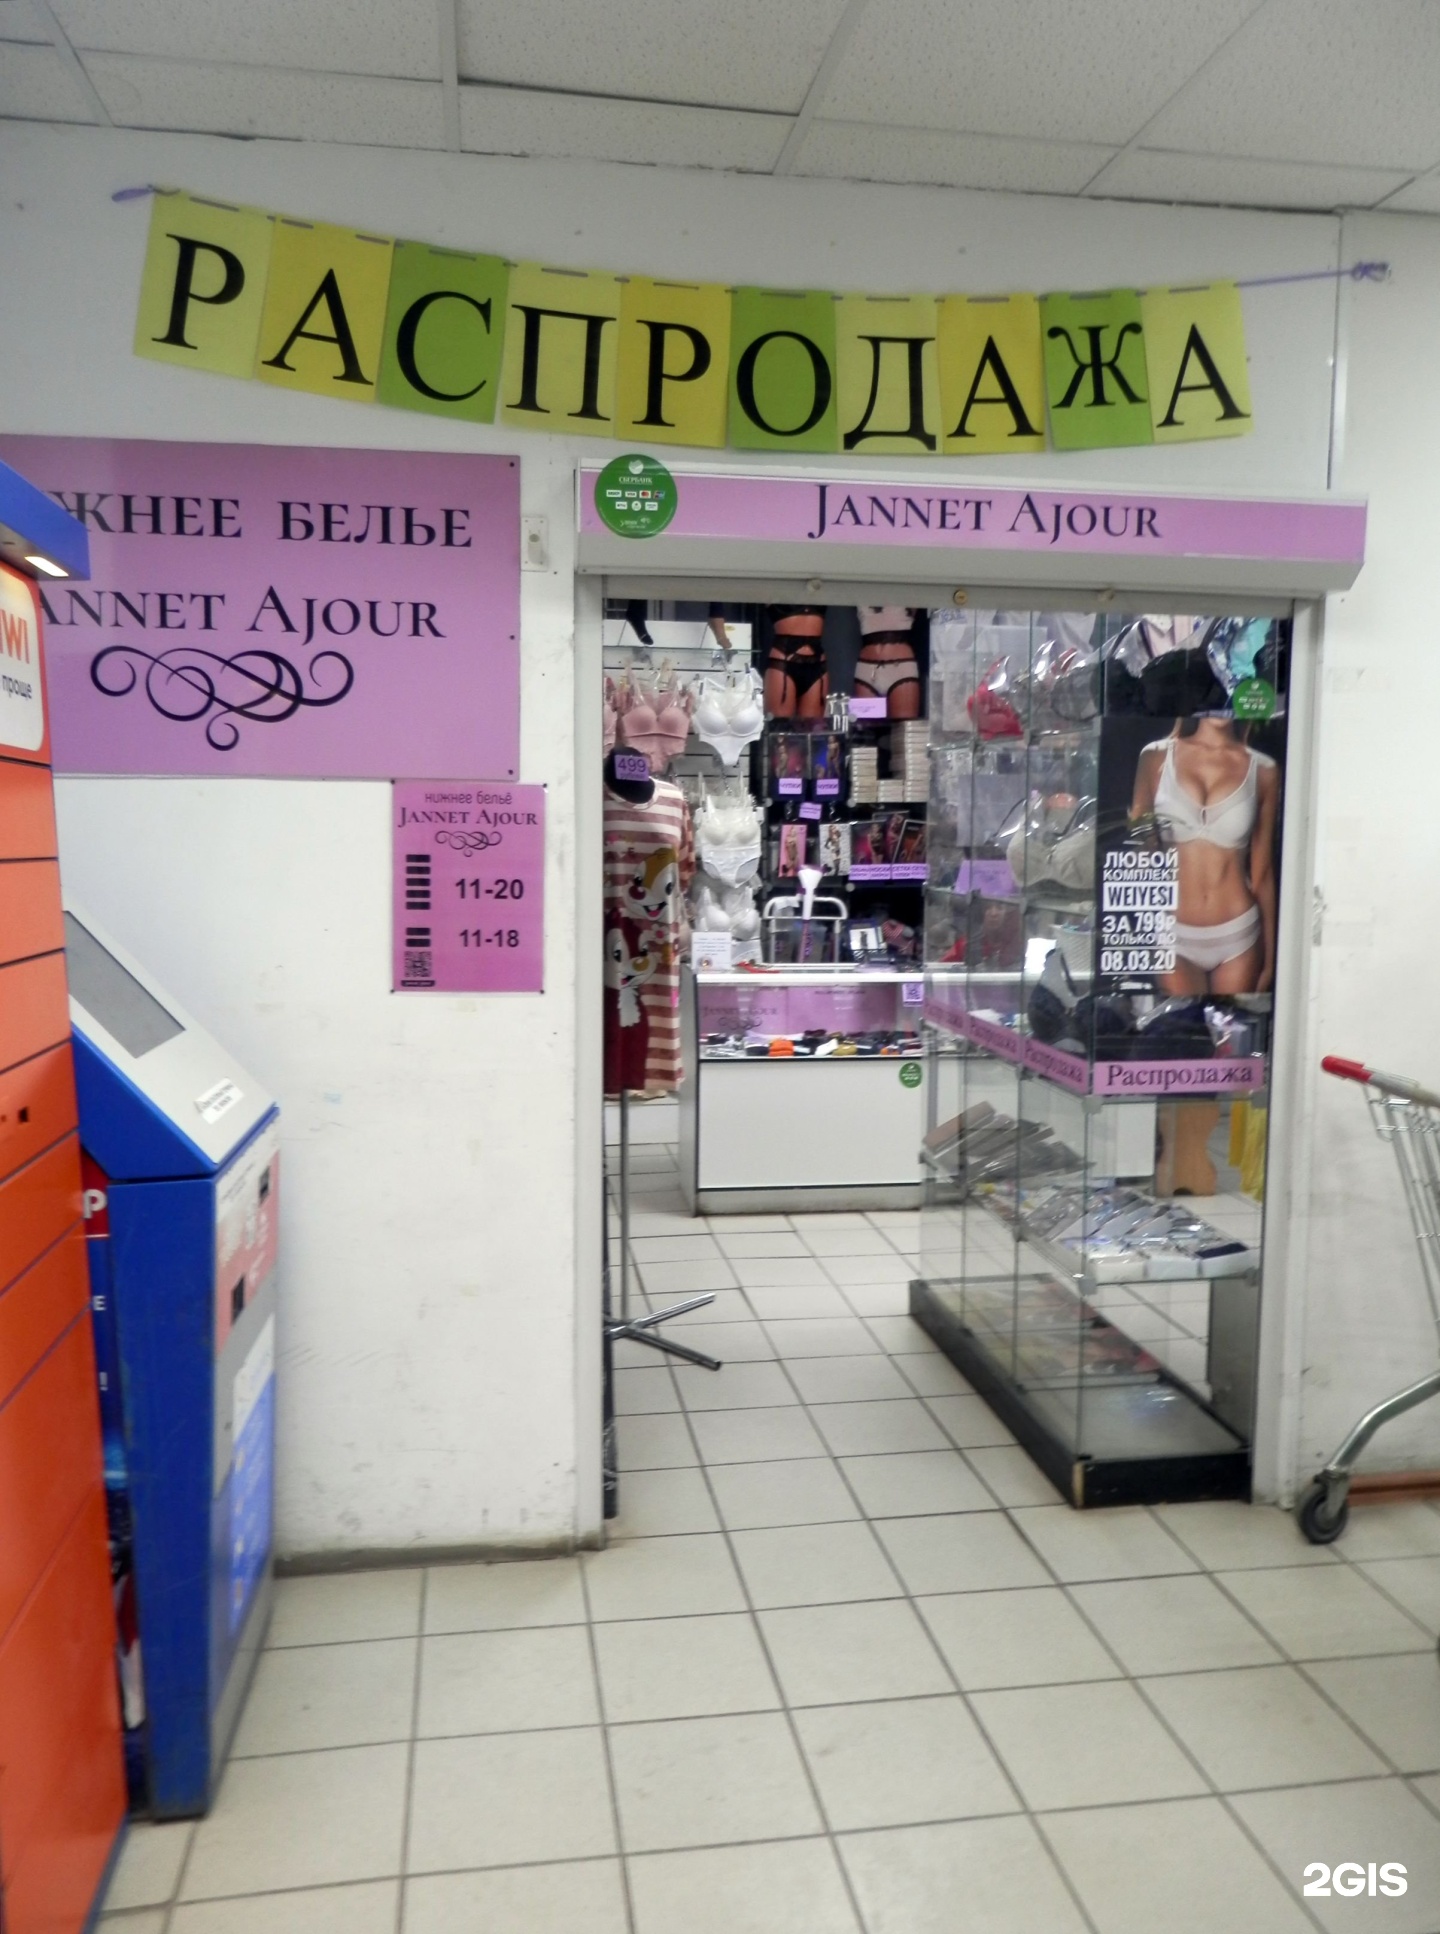 Магазин Нижнего Белья Челябинск